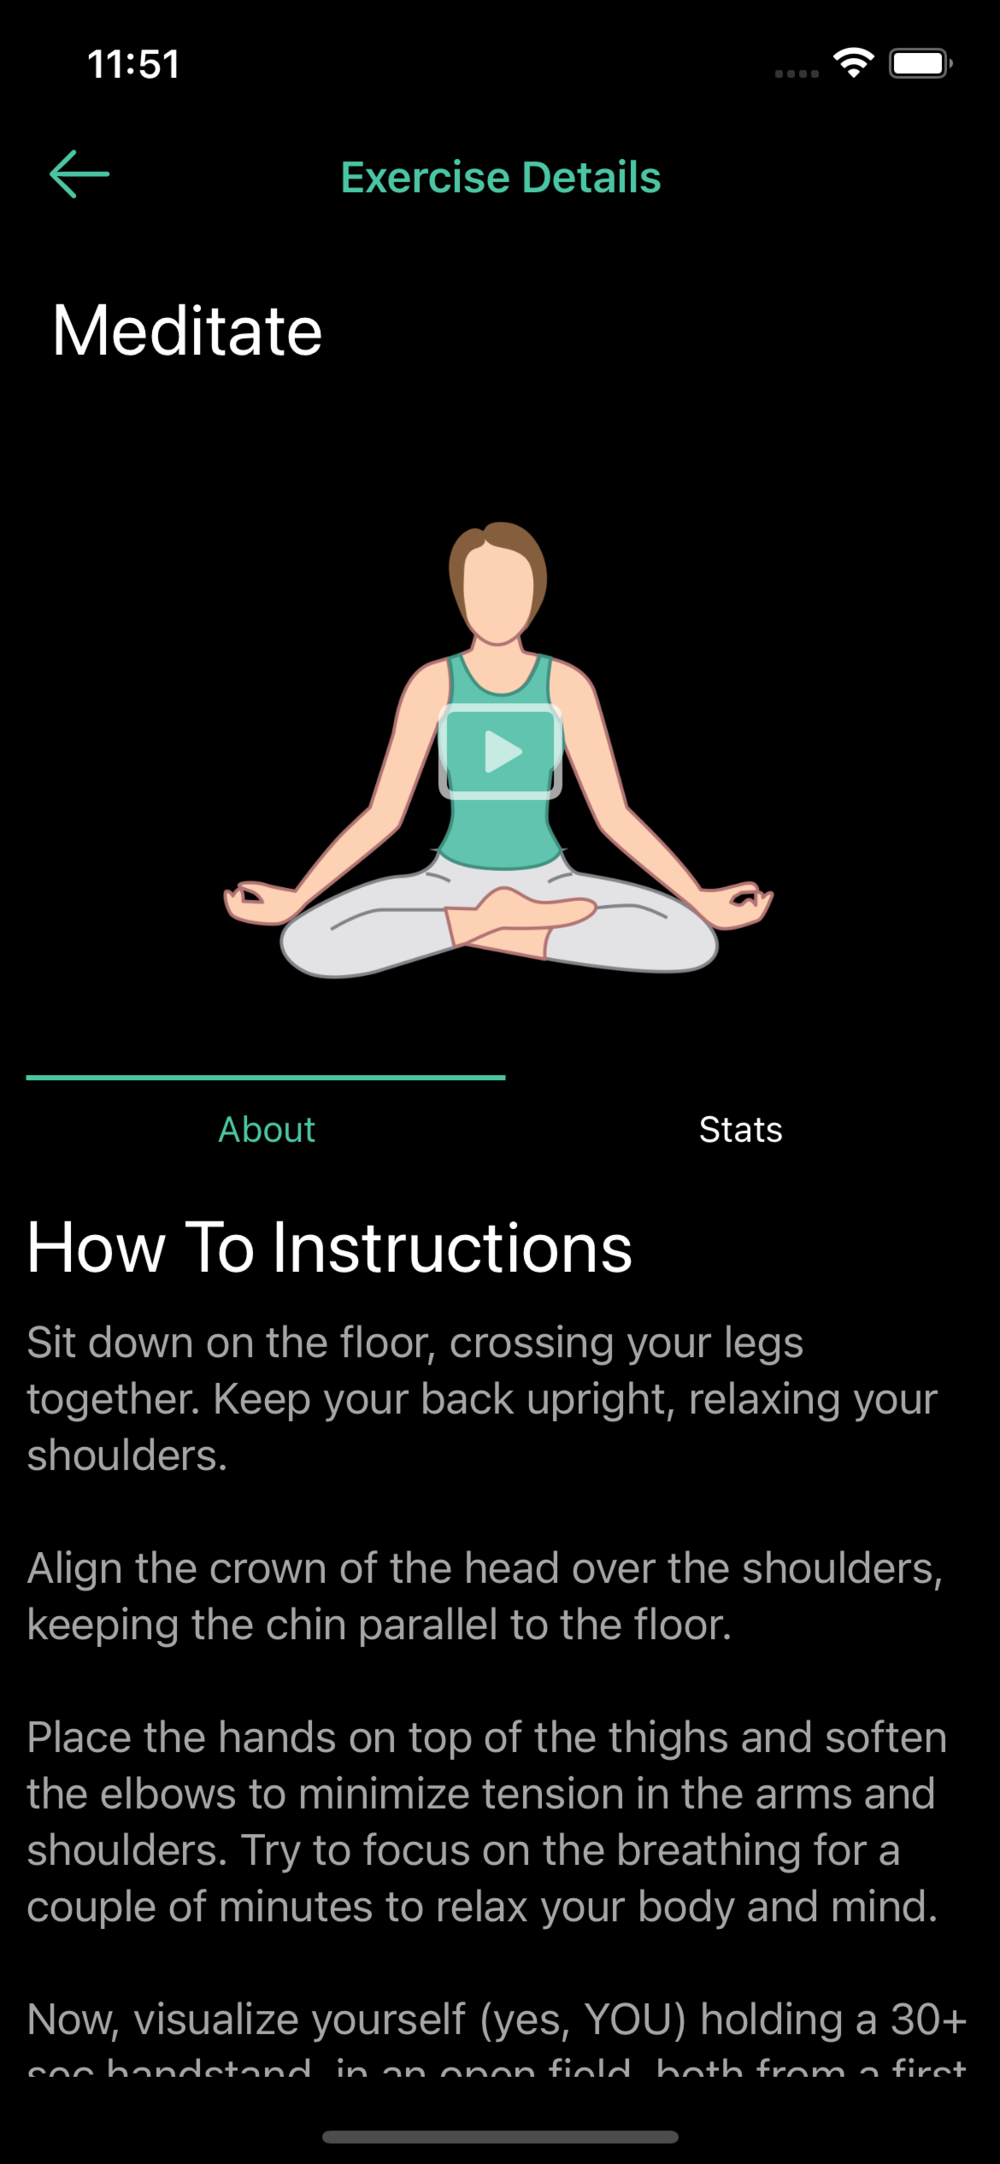 Meditation Exercise Details